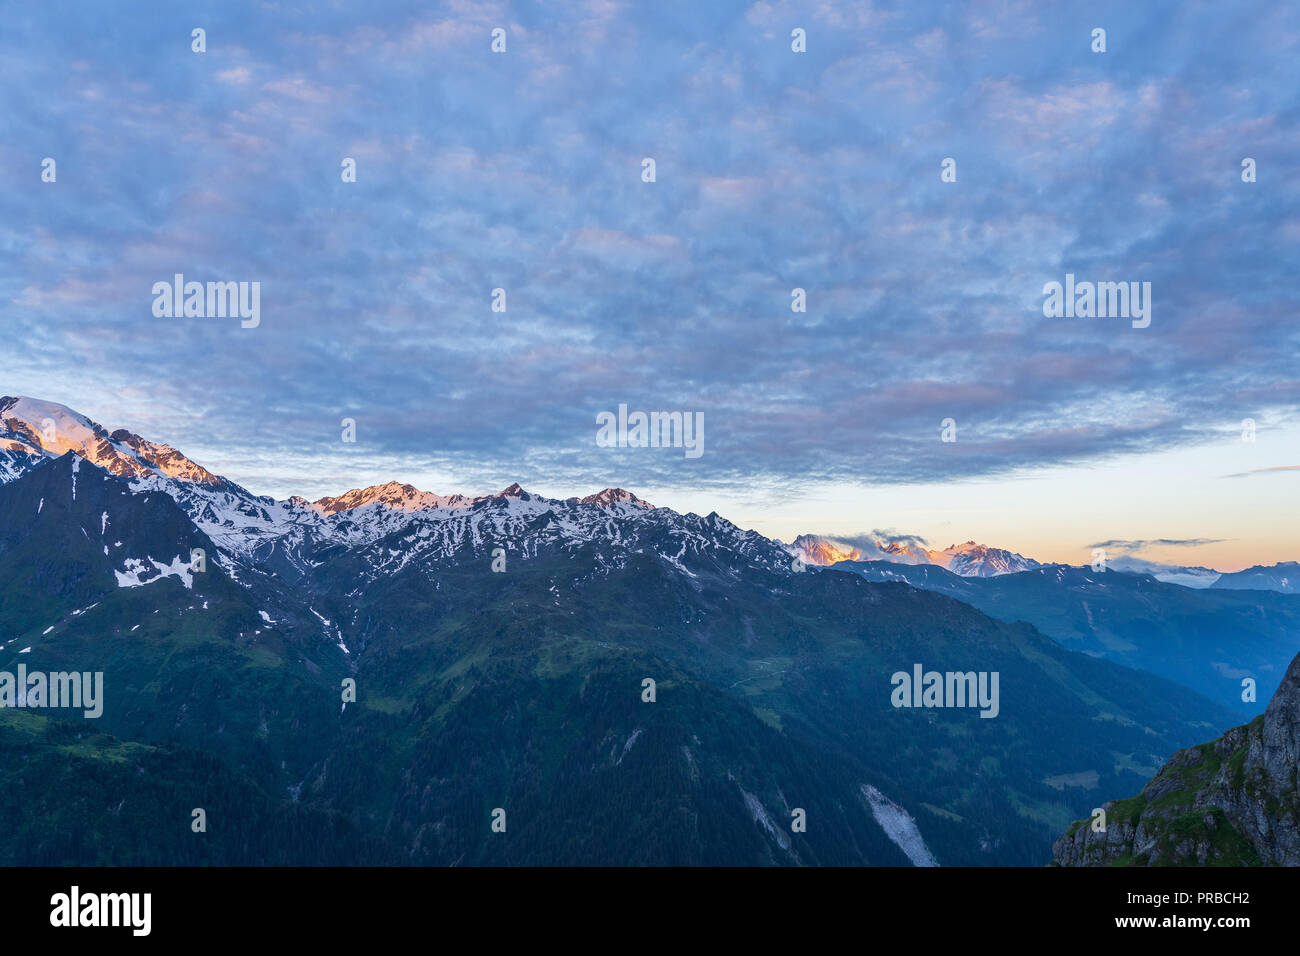 Einen malerischen Blick auf den wunderschönen Schweizer Alpen Berge. Dramatische Szene am frühen Morgen in den hohen Bergen mit dem ersten Licht. Blaue Stunde Sonnenaufgang mit pinkfarbenen und blauen t Stockfoto